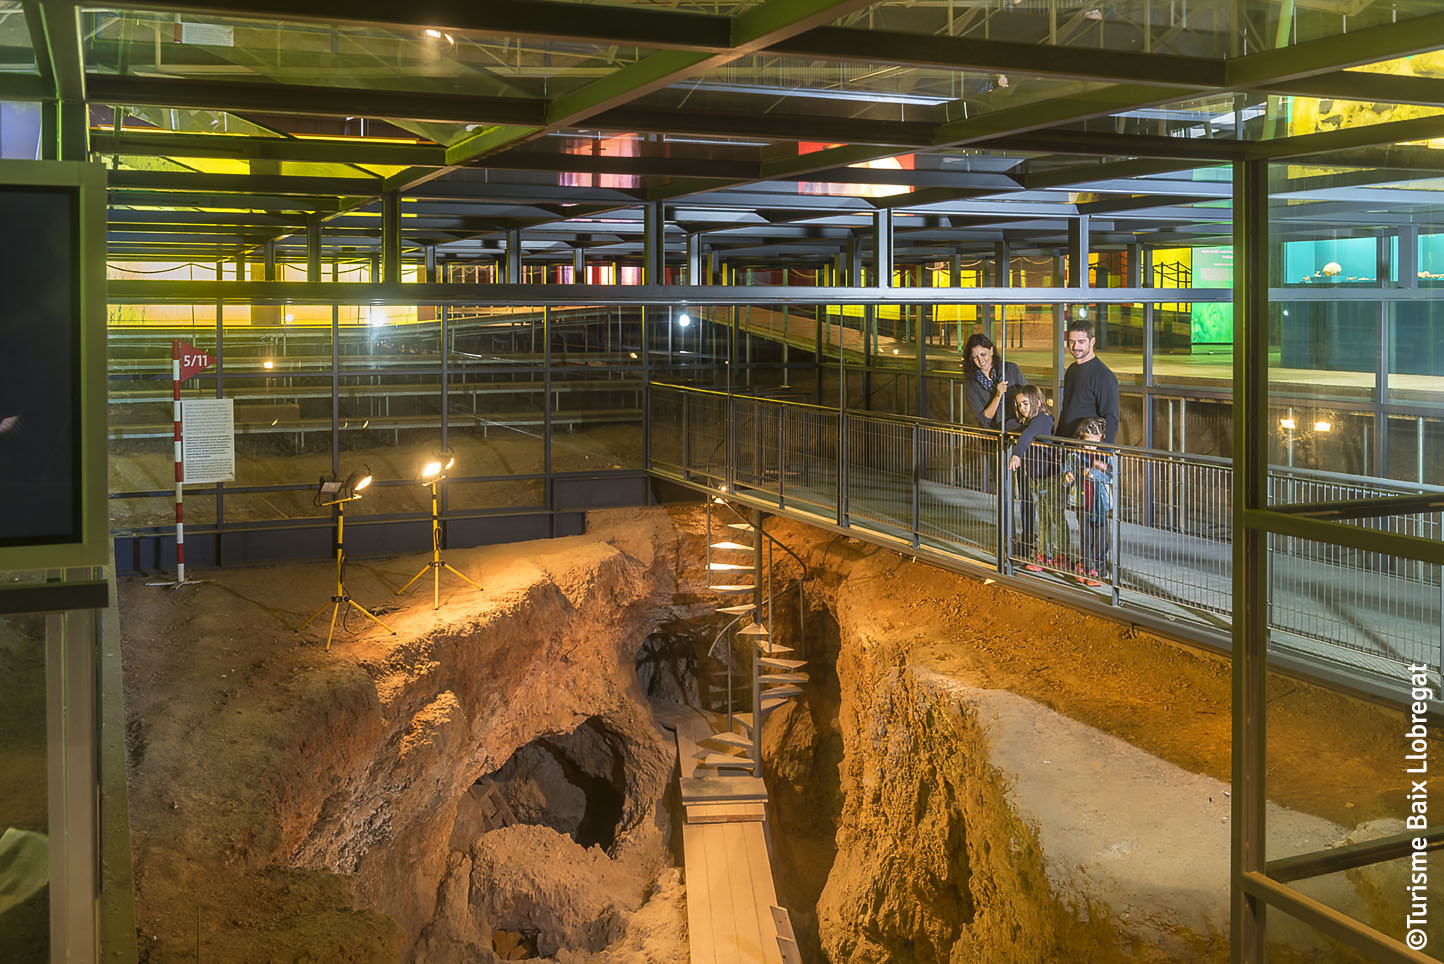 Història del jaciment del Parc Arqueològic de les Mines de Gavà